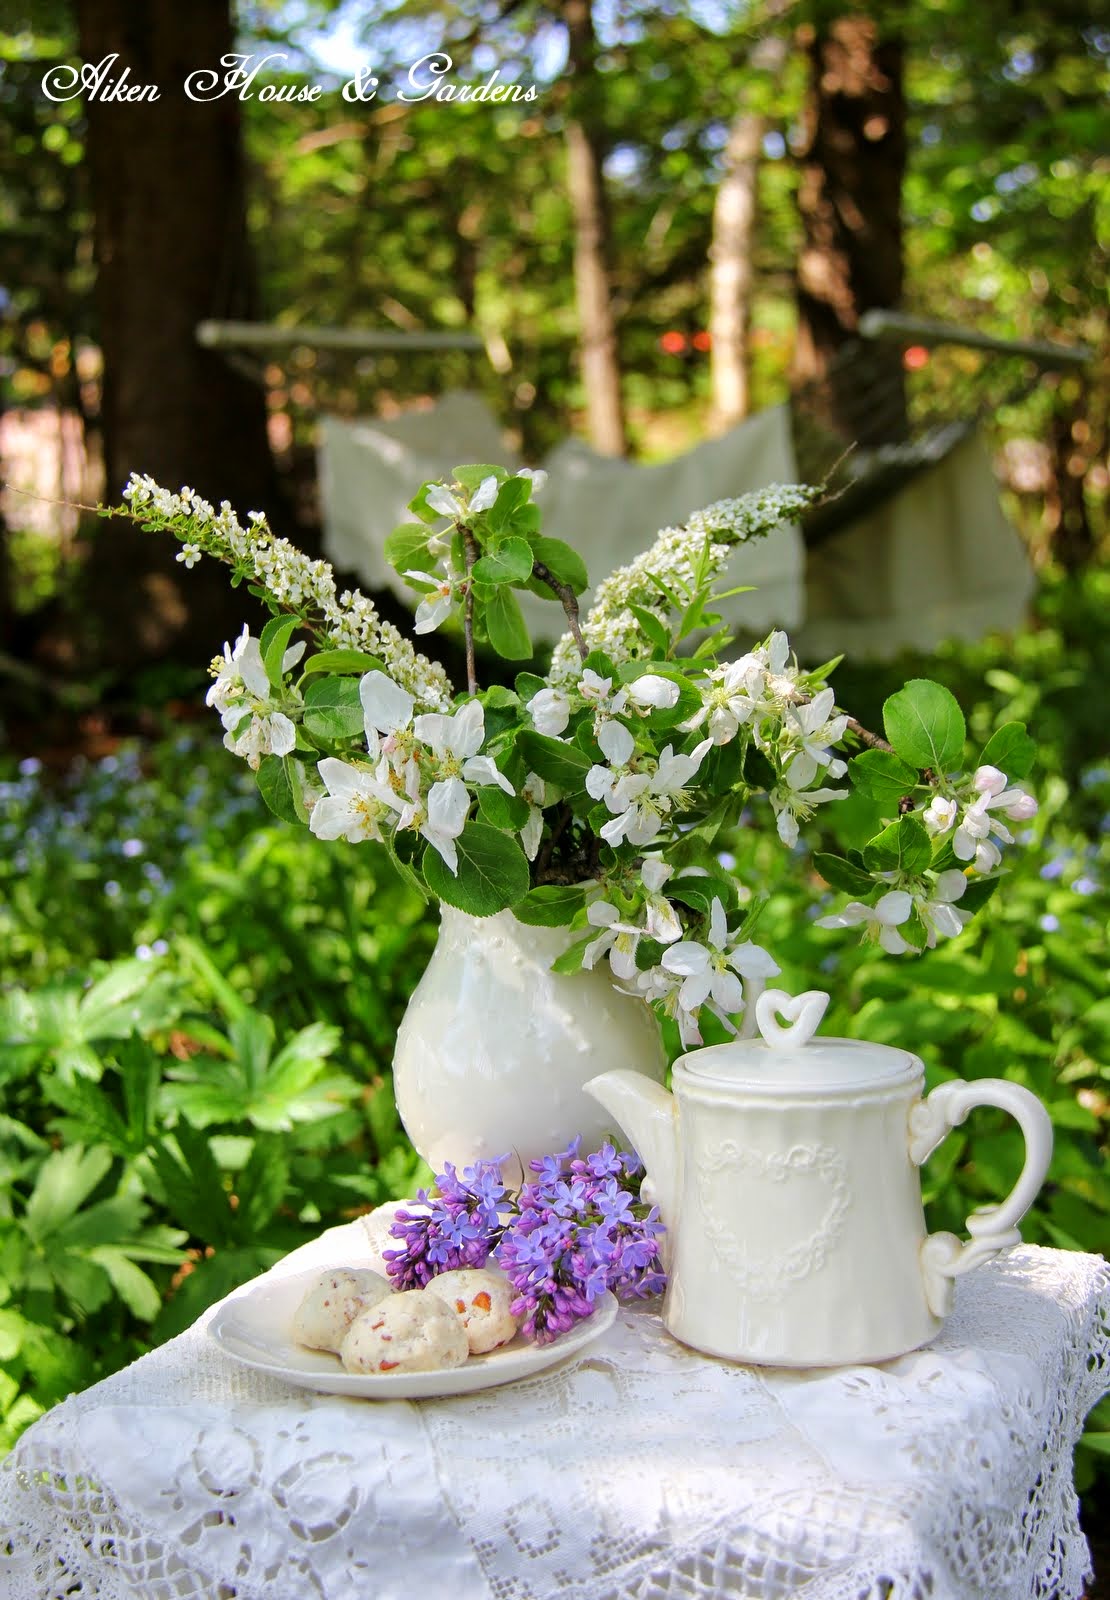 Весенняя чашка чая. Чаепитие в саду. Чаепитие в цветущем саду. Чай в саду. Весеннее утро в саду.